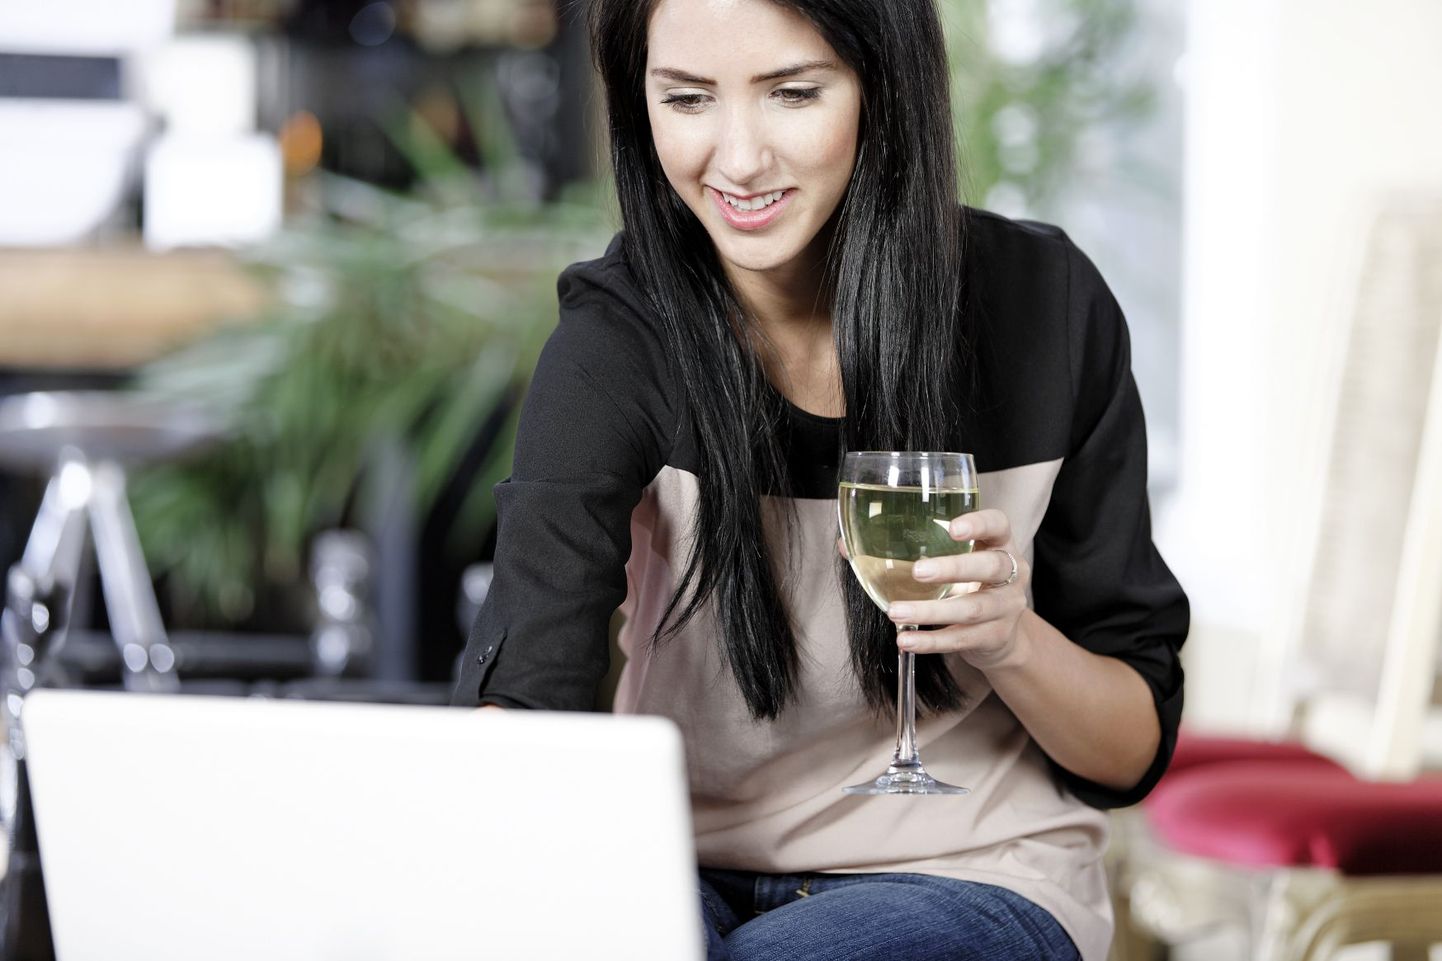 Noorte naiste seas levib komme päeva veiniklaasiga lõpetada.